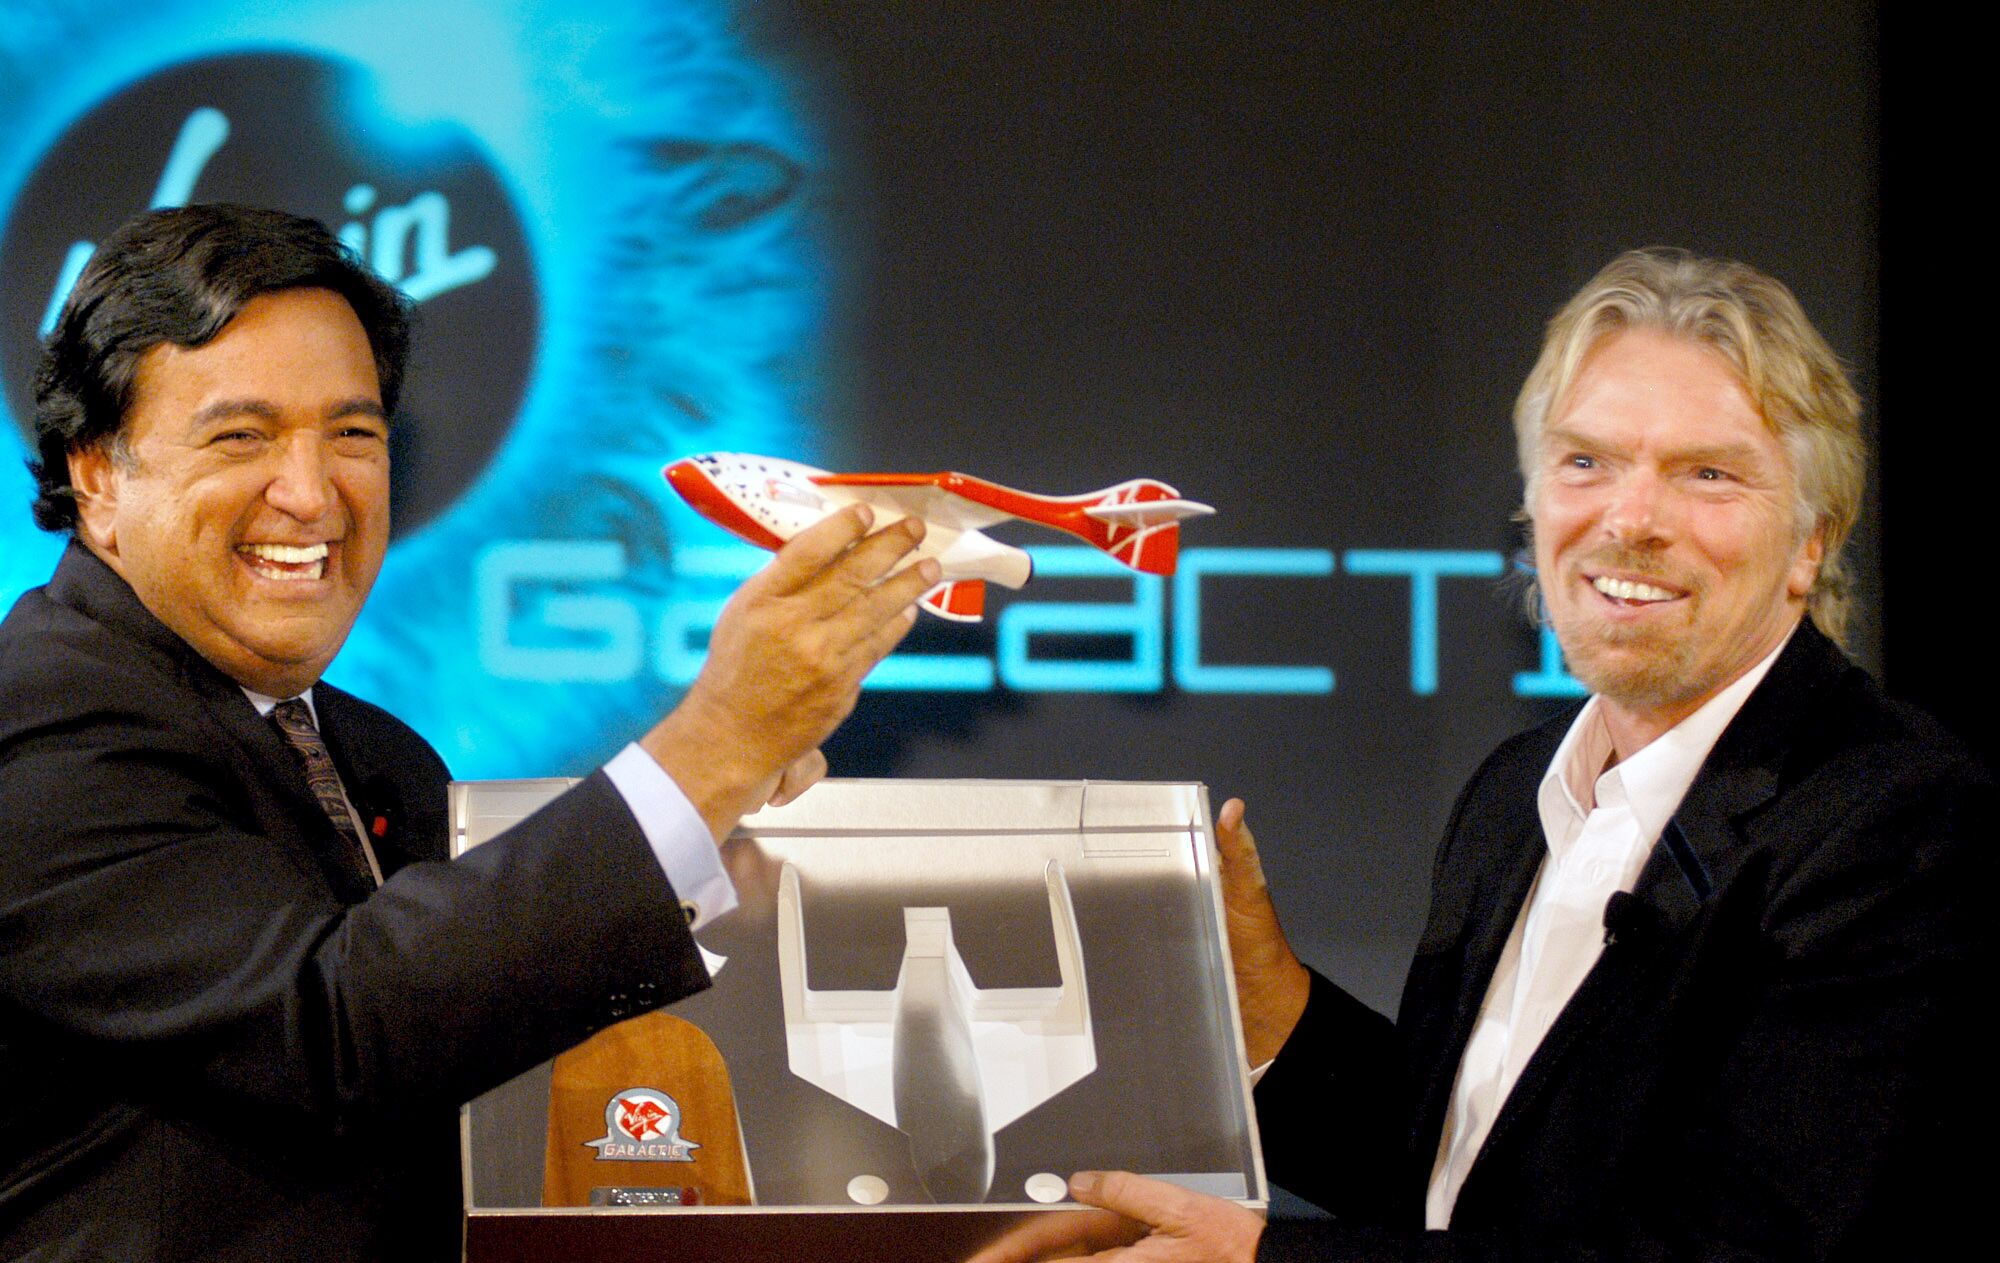 Улыбающийся мужчина с темными волосами (слева) держит модель космического корабля рядом с бородатым мужчиной, тоже улыбающимся, держащим дисплей 